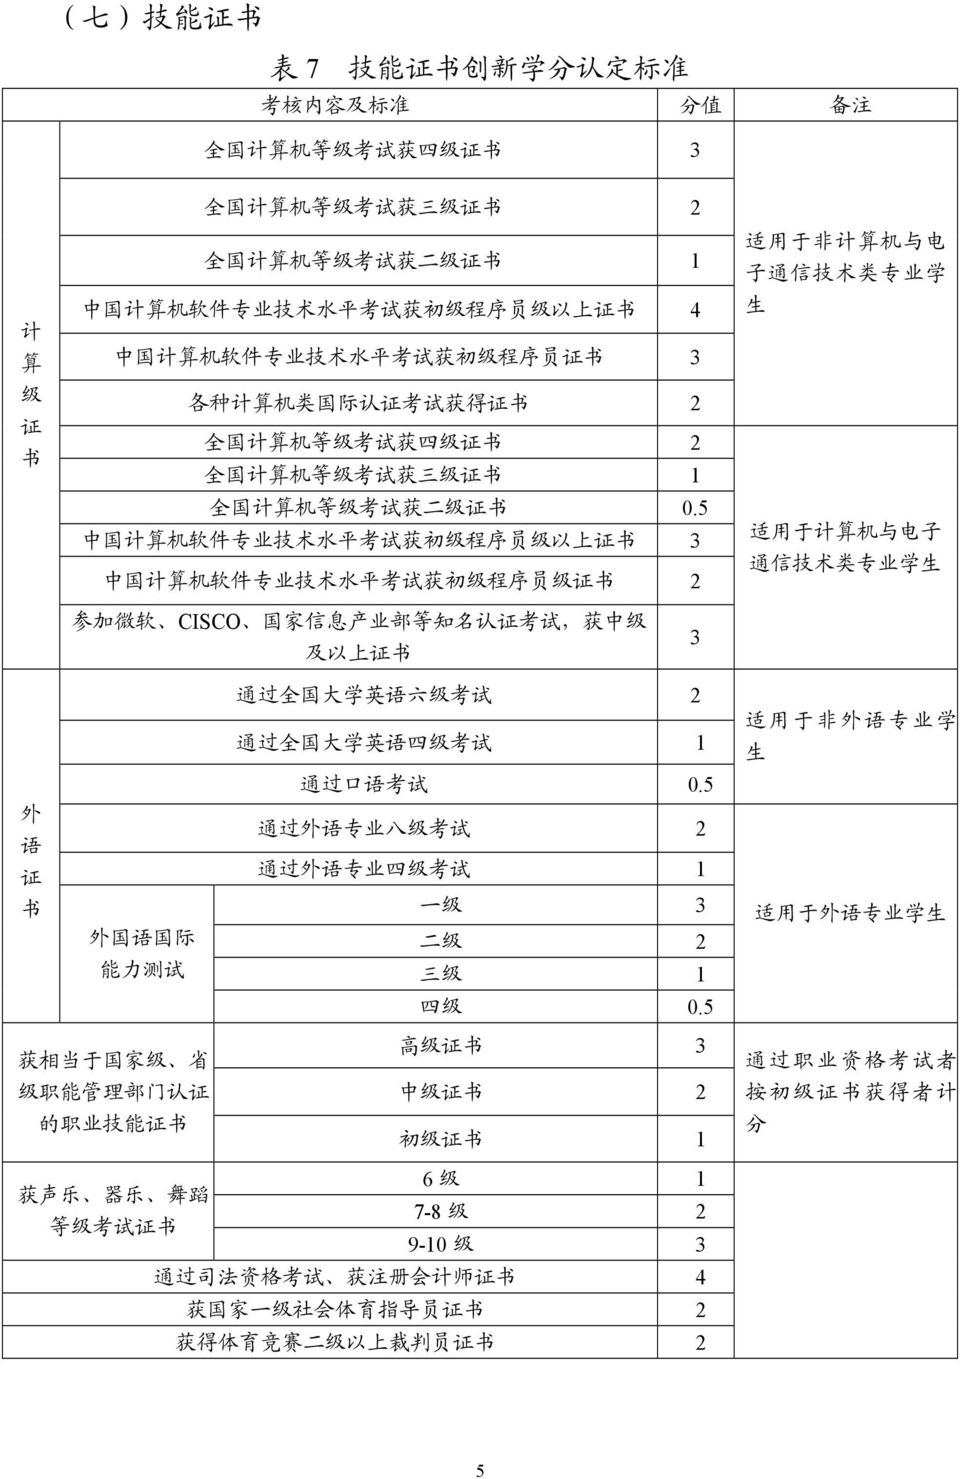 5 中 国 计 算 机 软 件 专 业 技 术 水 平 考 试 获 初 级 程 序 员 级 以 上 证 书 3 中 国 计 算 机 软 件 专 业 技 术 水 平 考 试 获 初 级 程 序 员 级 证 书 2 适 用 于 非 计 算 机 与 电 子 通 信 技 术 类 专 业 学 生 适 用 于 计 算 机 与 电 子 通 信 技 术 类 专 业 学 生 参 加 微 软 CISCO 国 家 信